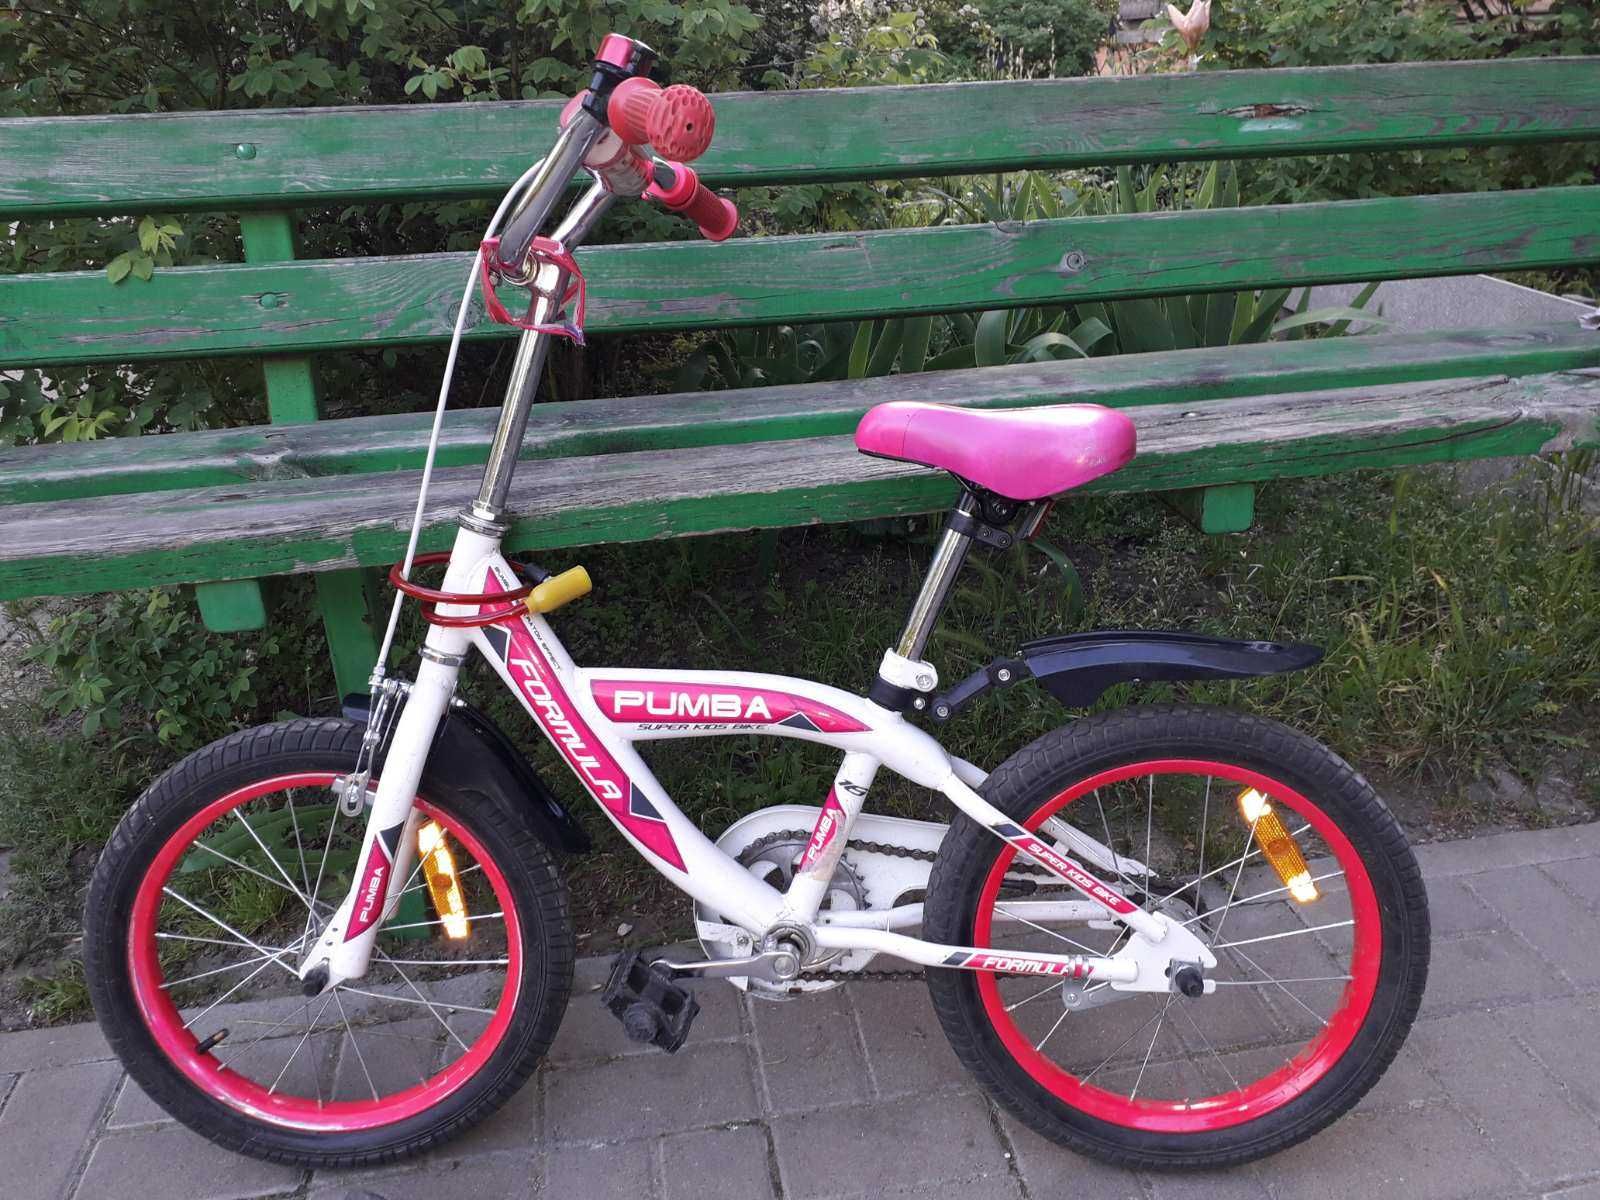 Велосипед formula pumba с колёсами 16 дюймов и боковыми колёсиками